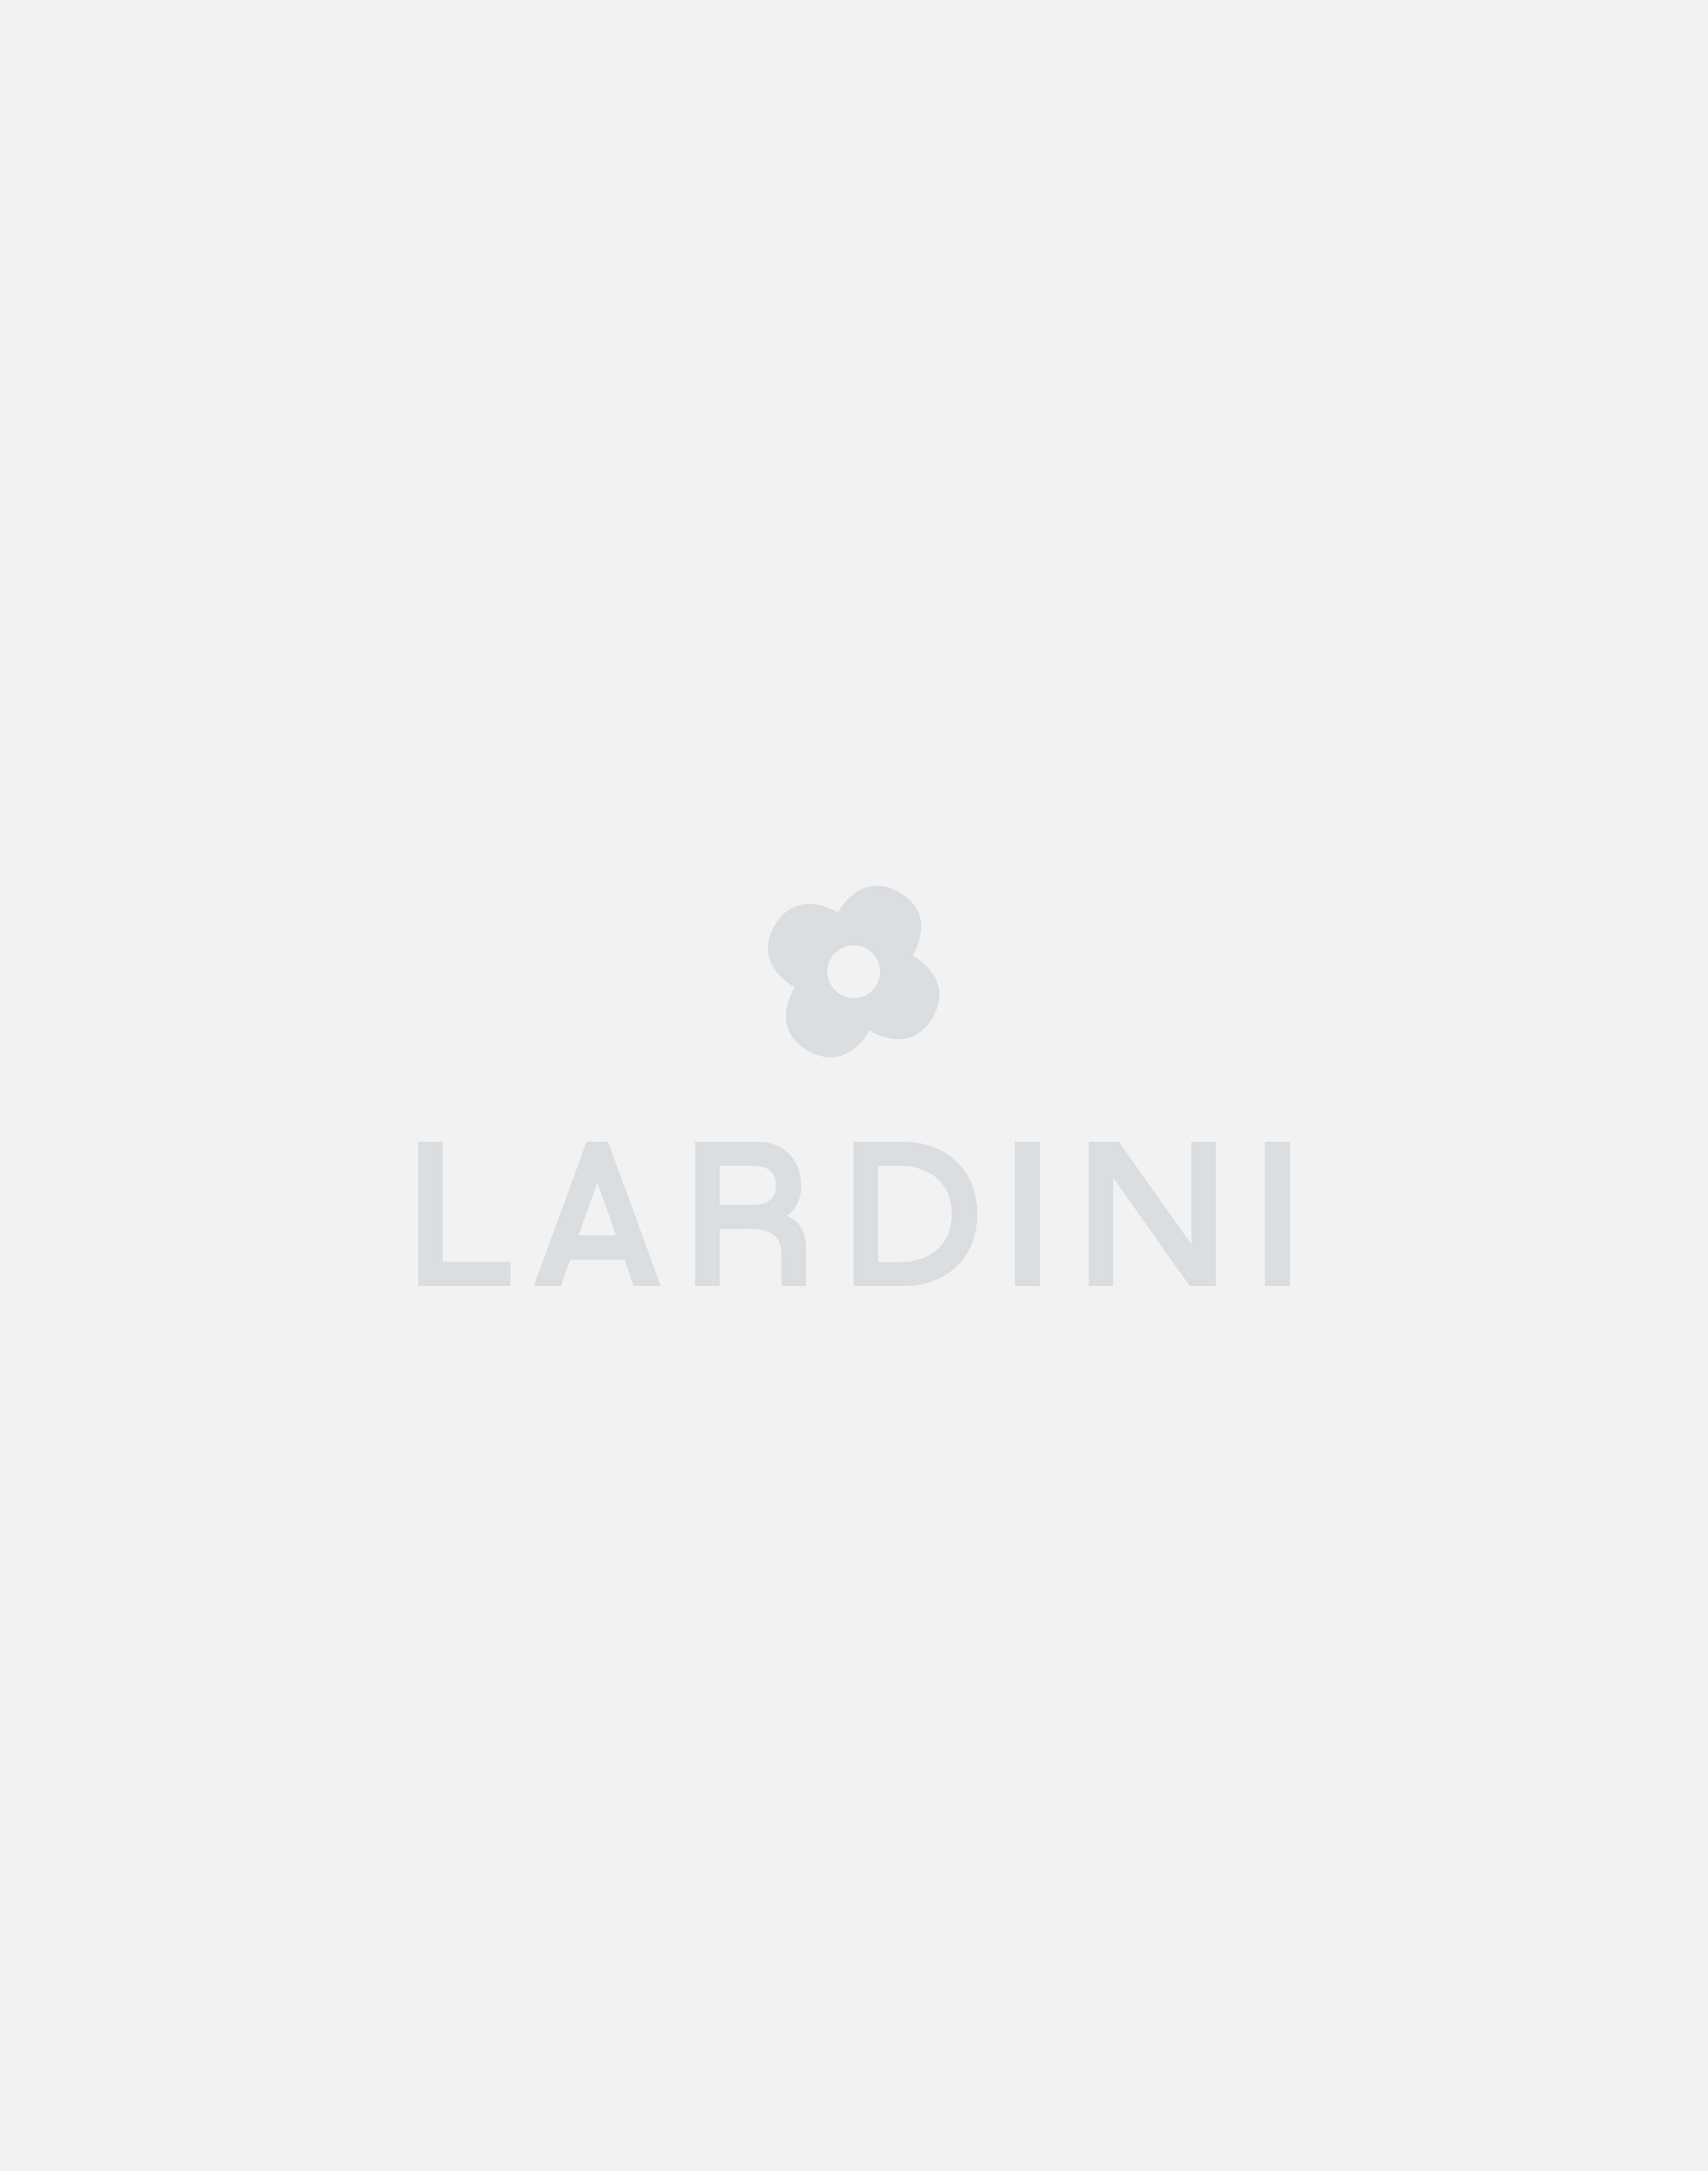 www.lardini.com